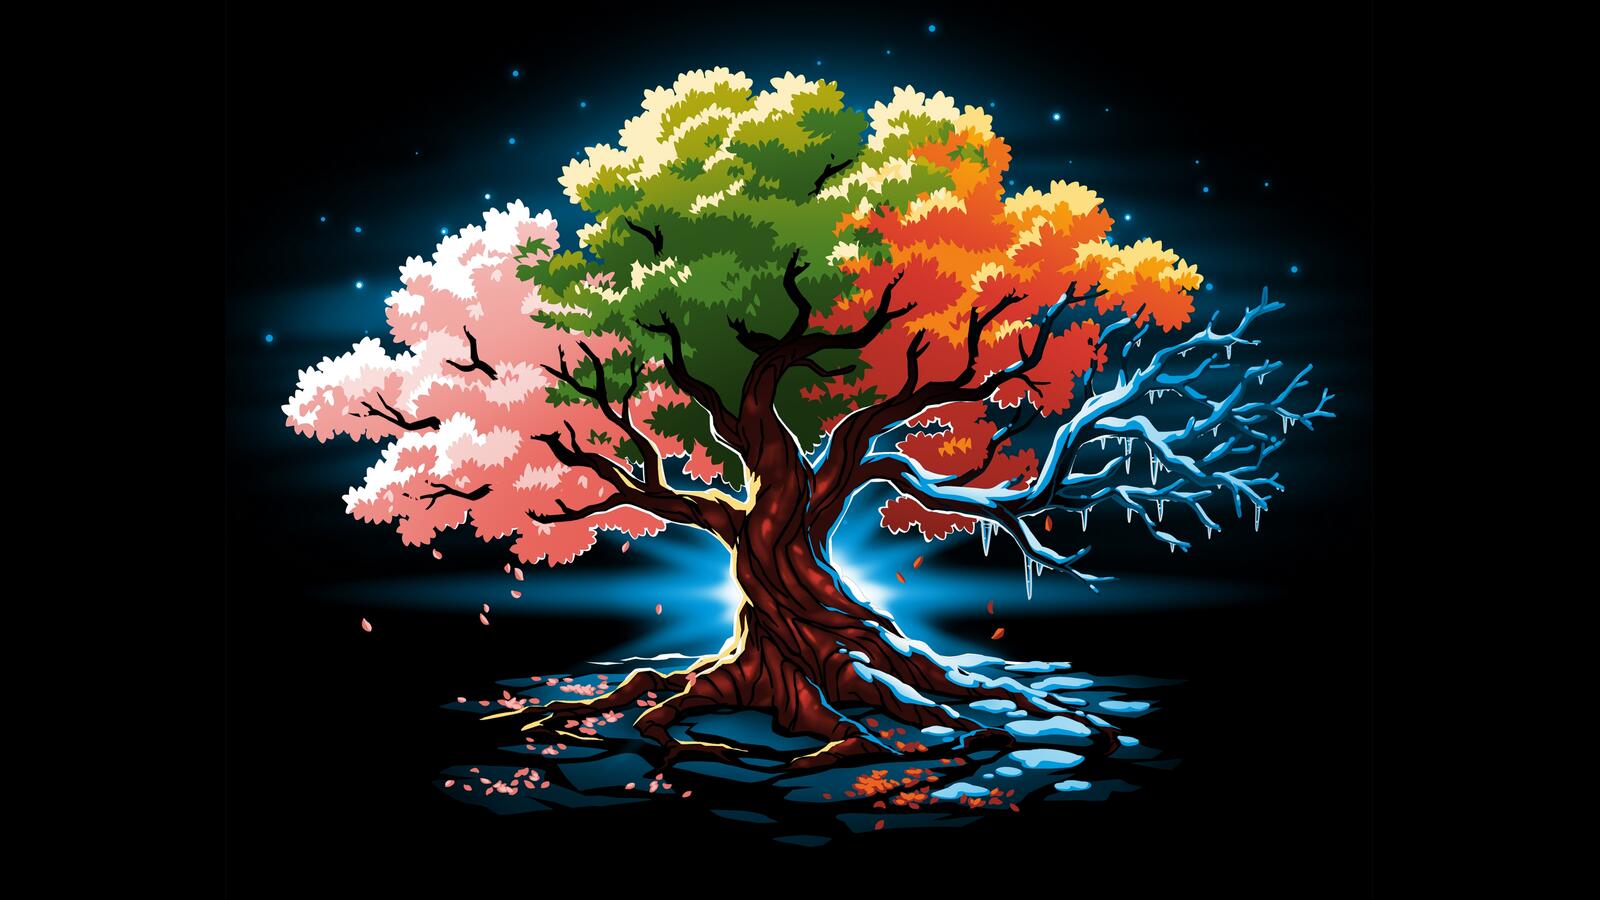 Бесплатное фото Рендеринг дерева с разноцветной кроной